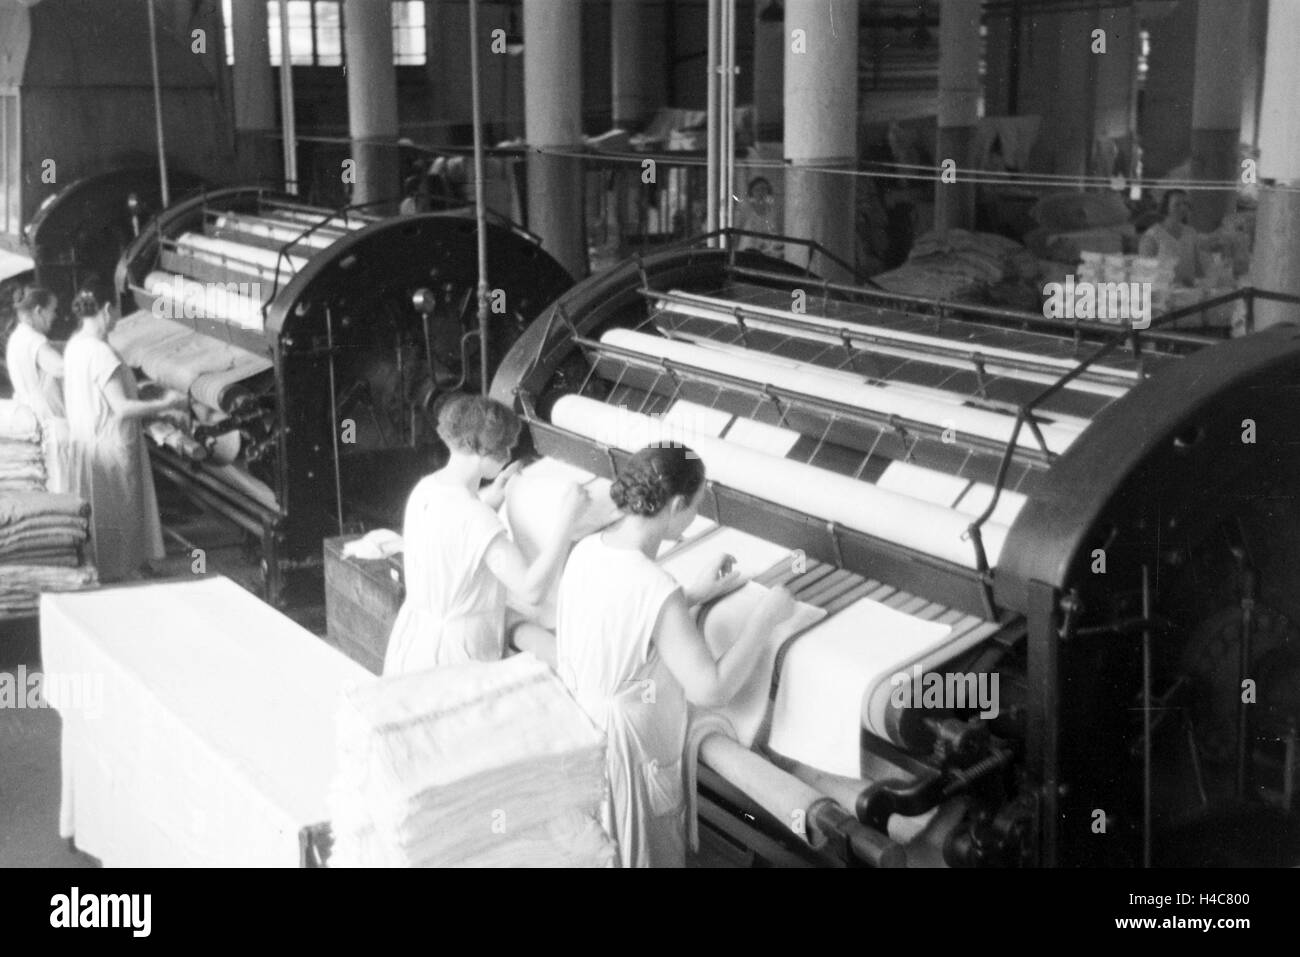 Mitarbeiterinnen der Mitropa beim Bügeln der Bezüge der Mitropa Reisekissen, Deutschland 1930er Jahre. Female staff members ironing the laundry of Mitropa travel pillows, Germany 1930s Stock Photo